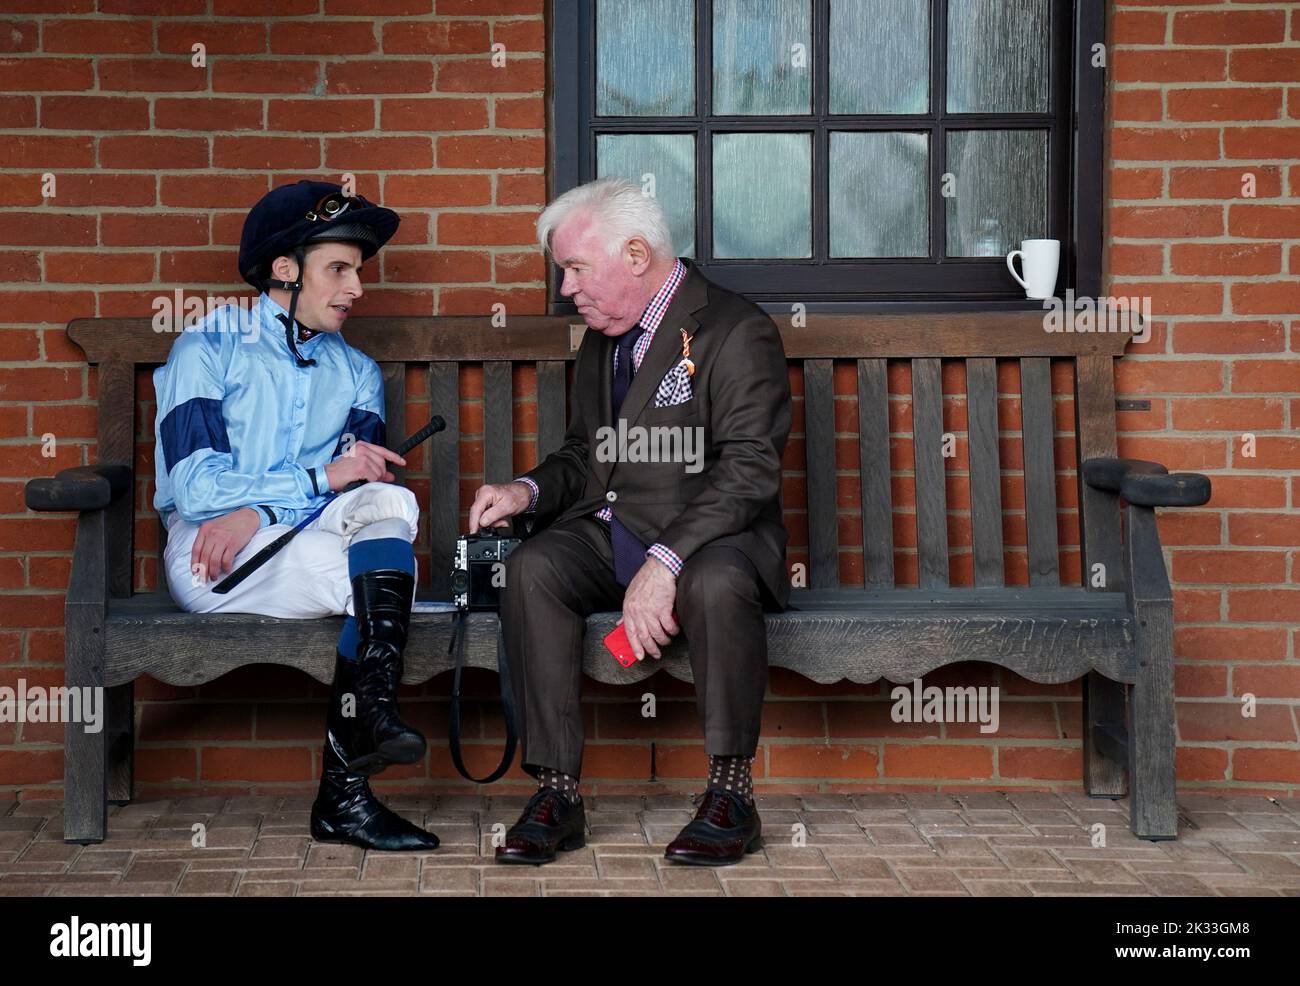 Il jockey William Buick chiacchiera con un racegoer durante il giorno di Juddmonte del Cambridgeshire Meeting all'ippodromo di Newmarket. Data immagine: Sabato 24 settembre 2022. Foto Stock